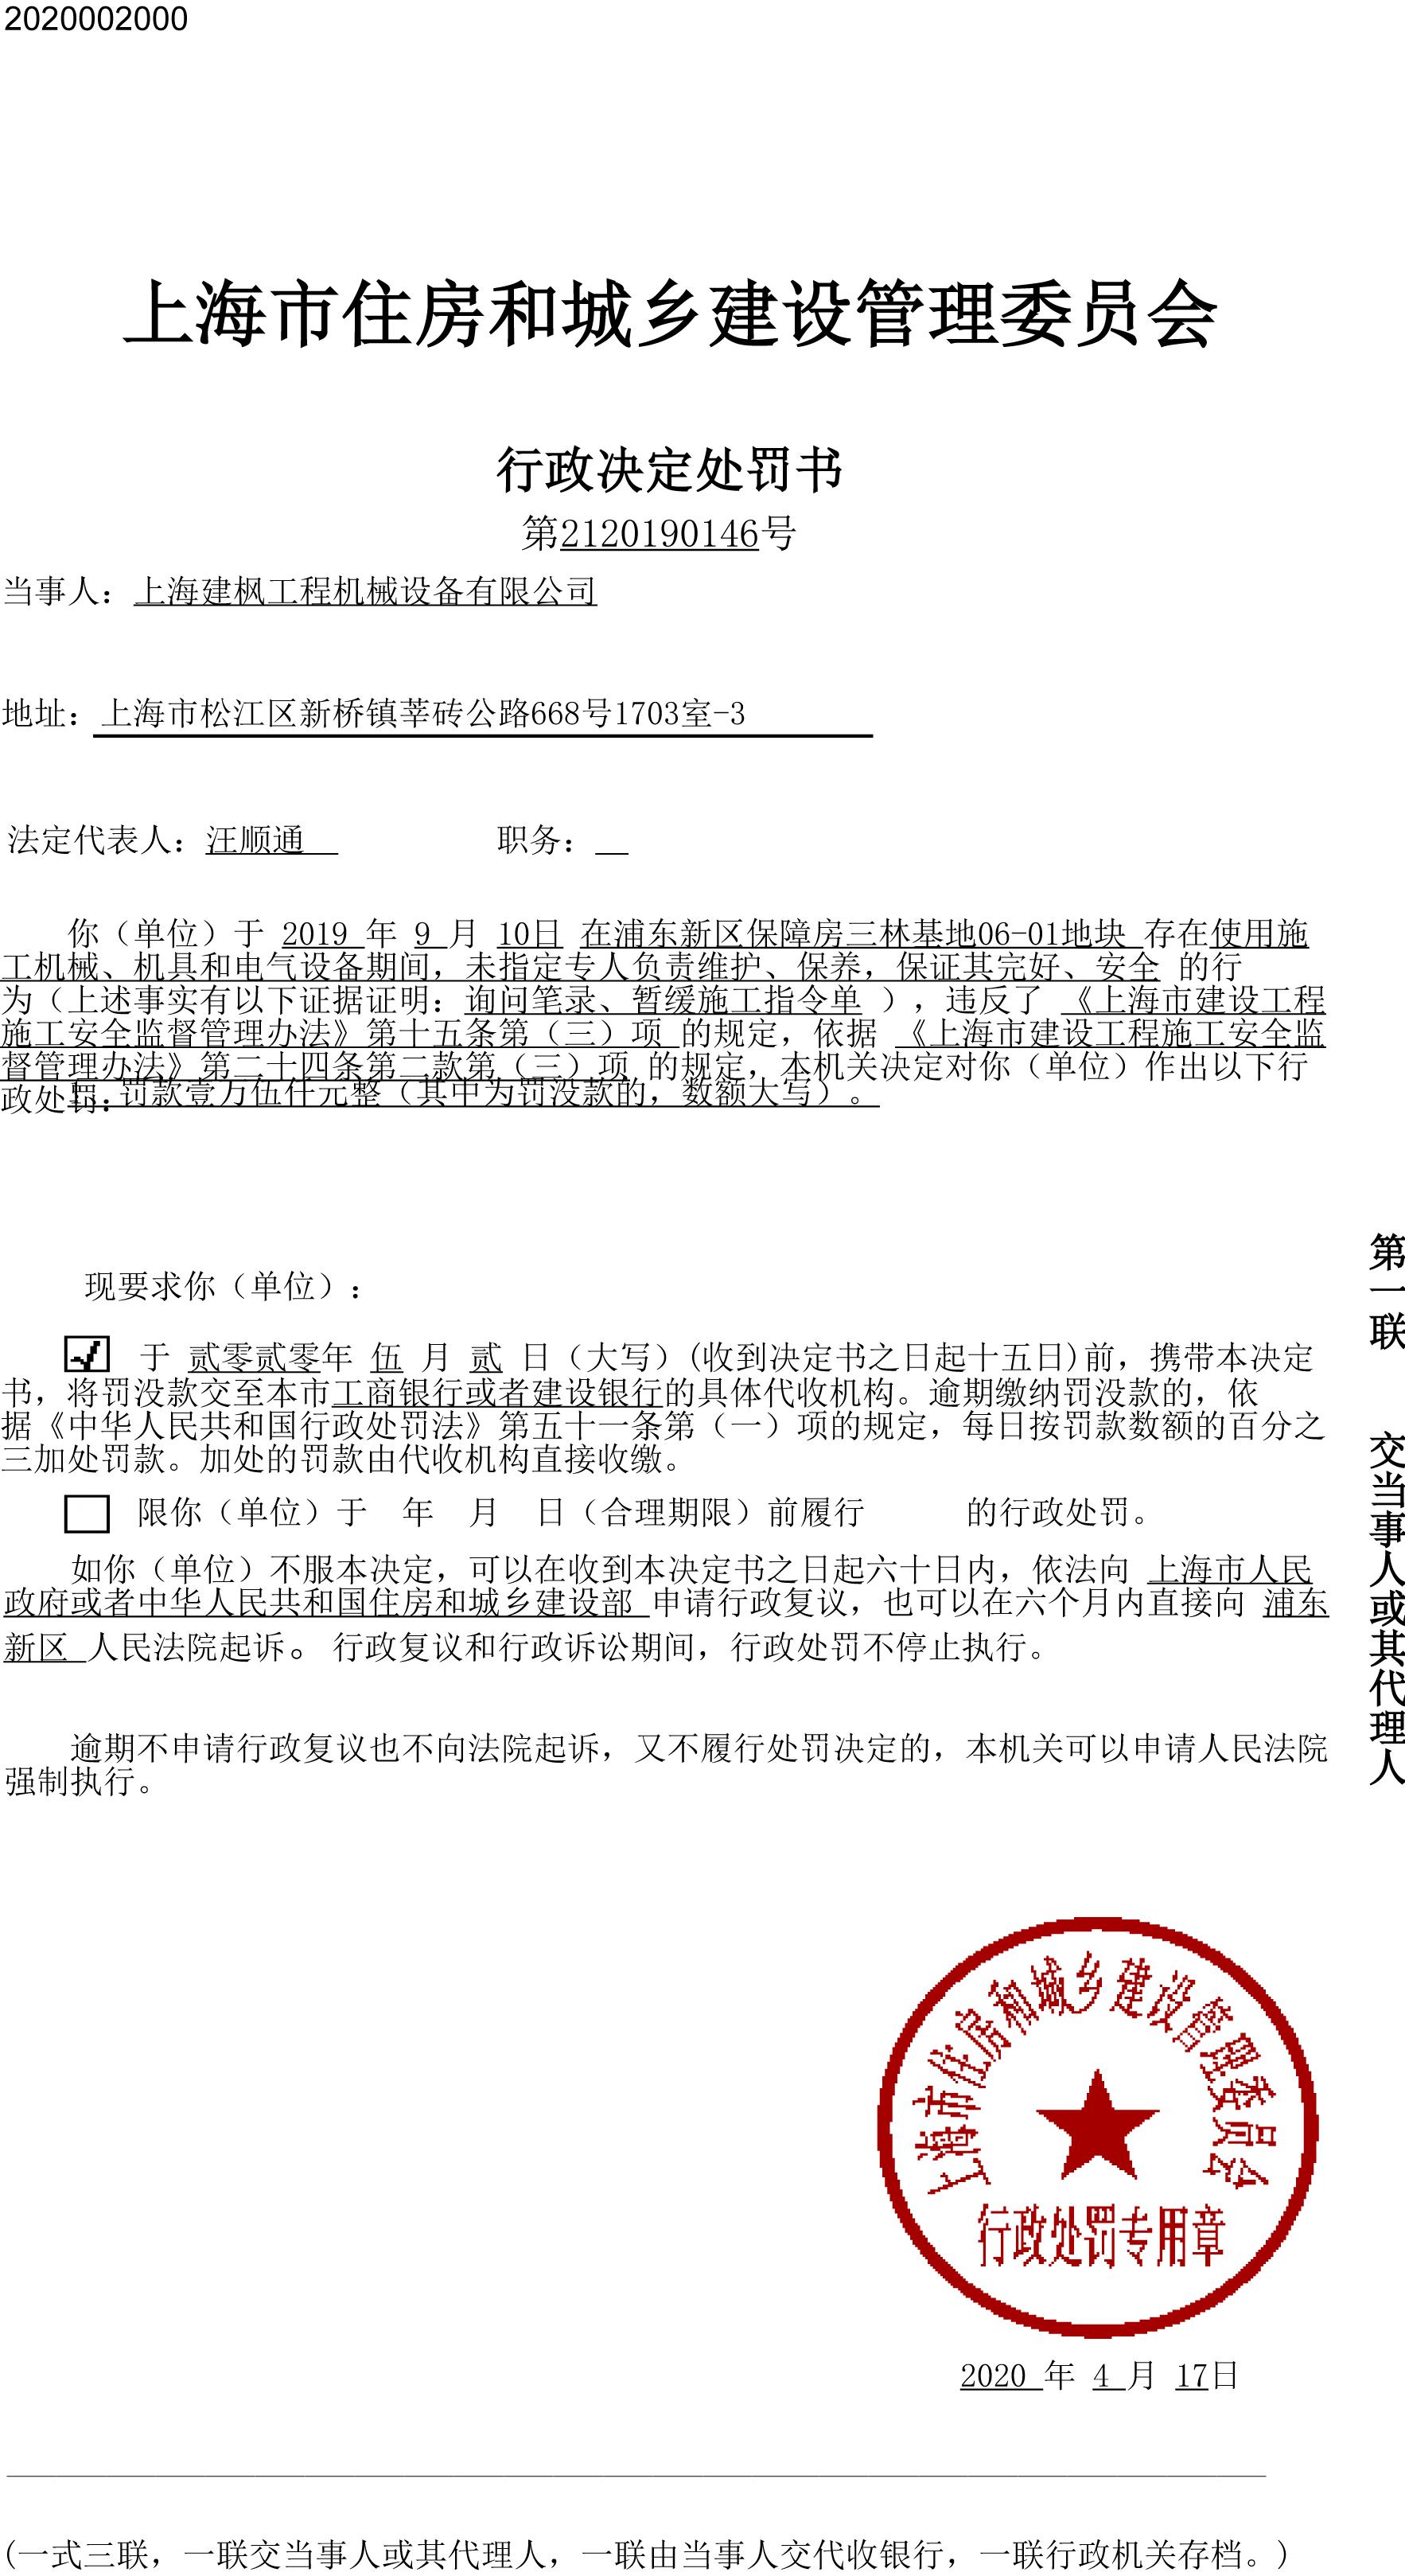 上海建枫工程机械设备有限公司浦东新区保障房项目违反安全生产相关规定遭罚